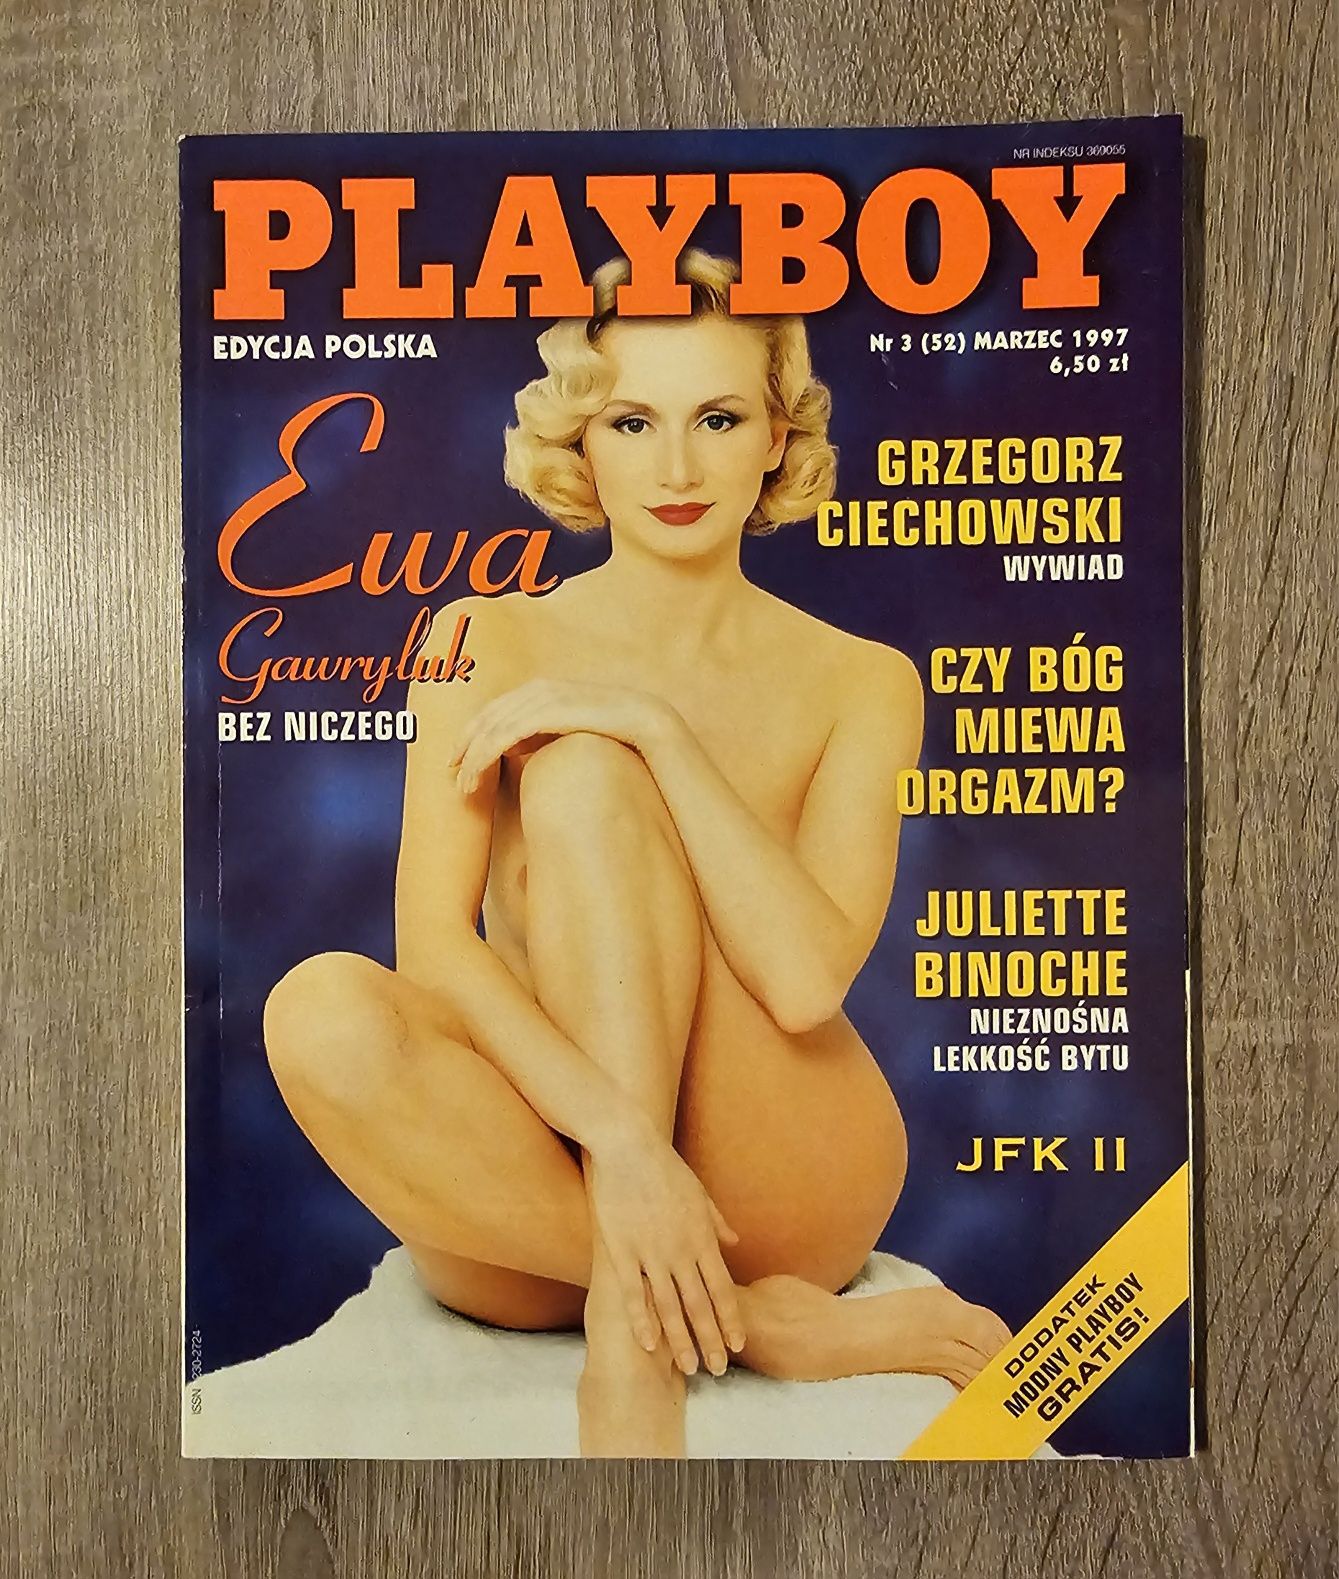 Playboy 1997 - EWA GAWRYLUK, Jami Ferrell, Grzegorz Ciechowski